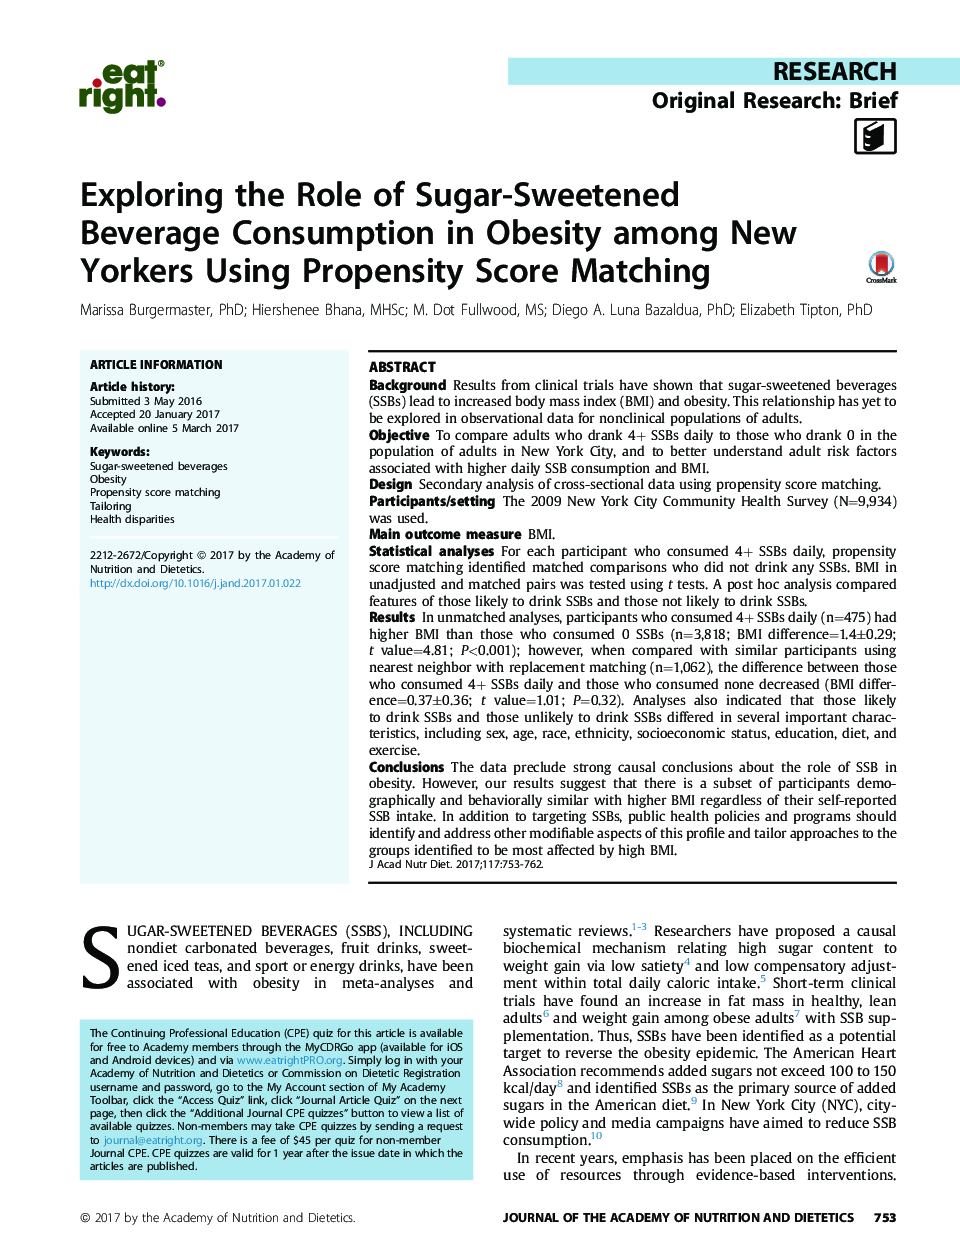 بررسی نقش مصرف نوشیدنی شکر در چاقی در میان نیویورک با استفاده از تطابق امتیاز گرایش 